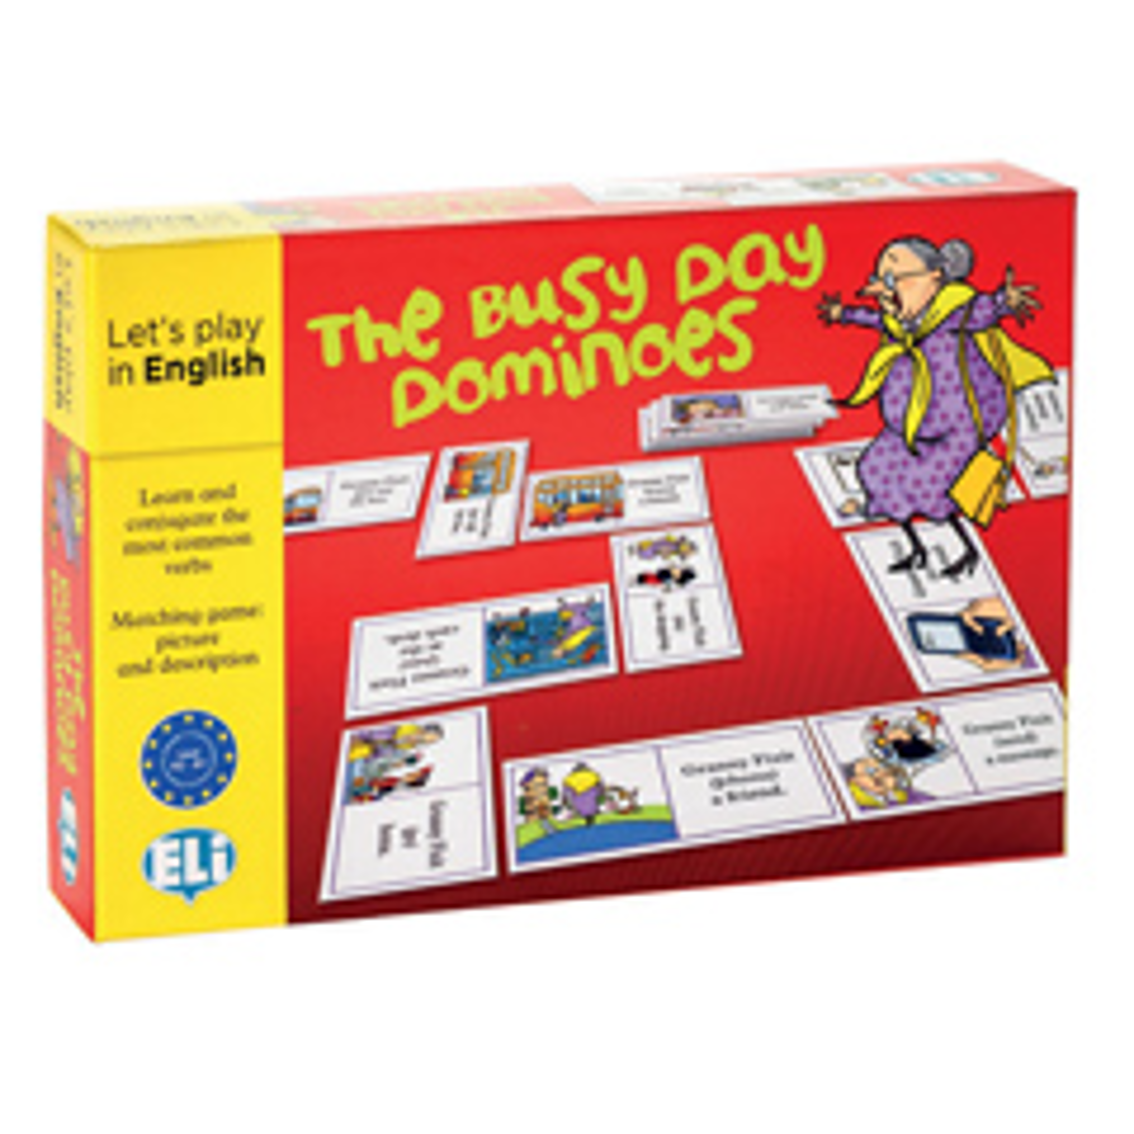 The Busy Day Dominoes: didaktična igra